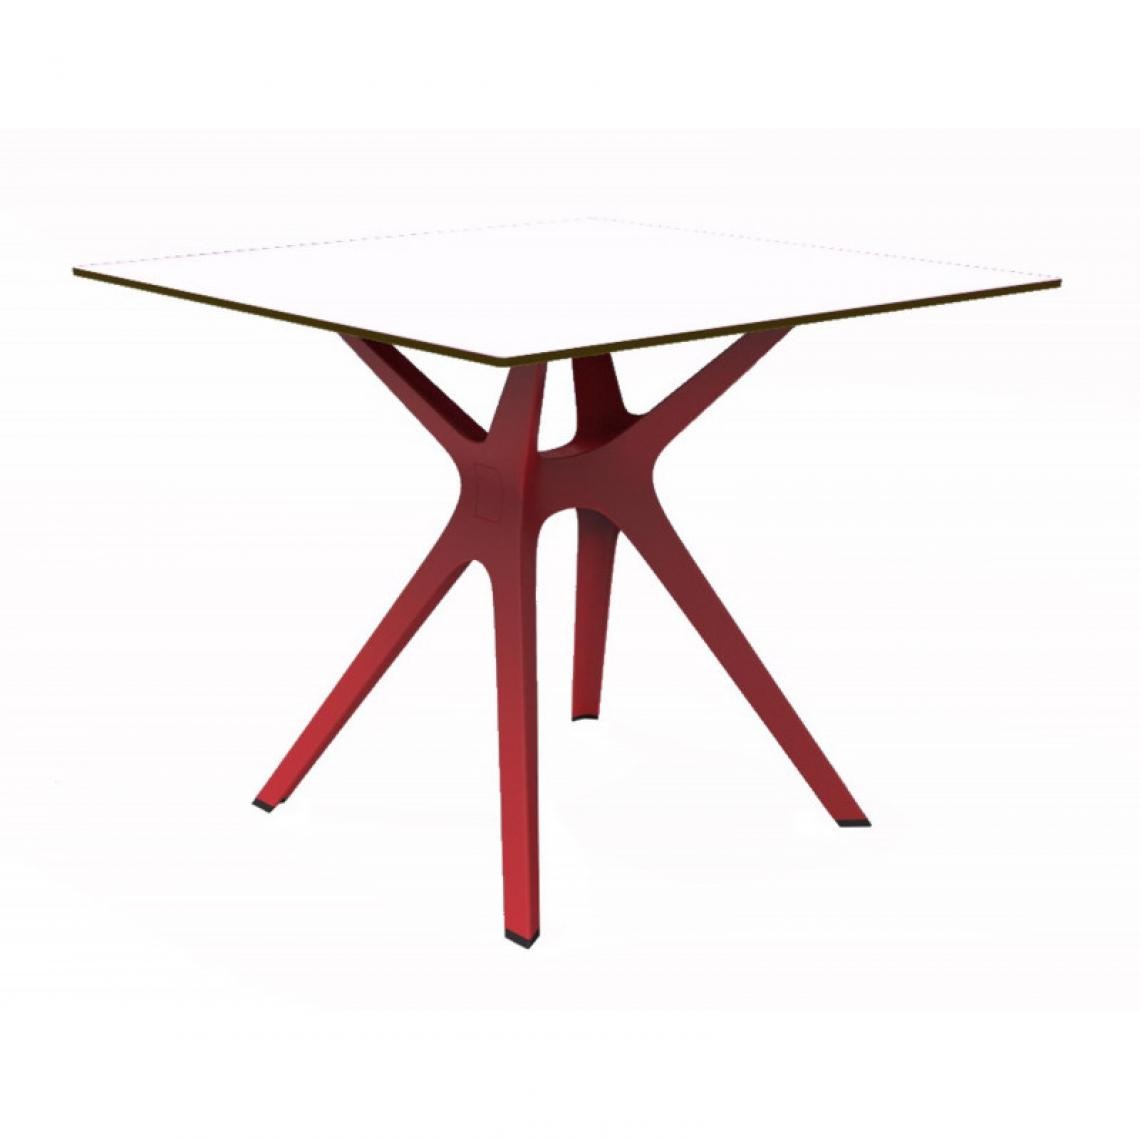 Resol - Table Phenolique 90x90 Pied De Table Vela "s" - Resol - Pied Rouge - Tableau BlancAluminium, phénolique compact, fibre de verre, p - Tables à manger